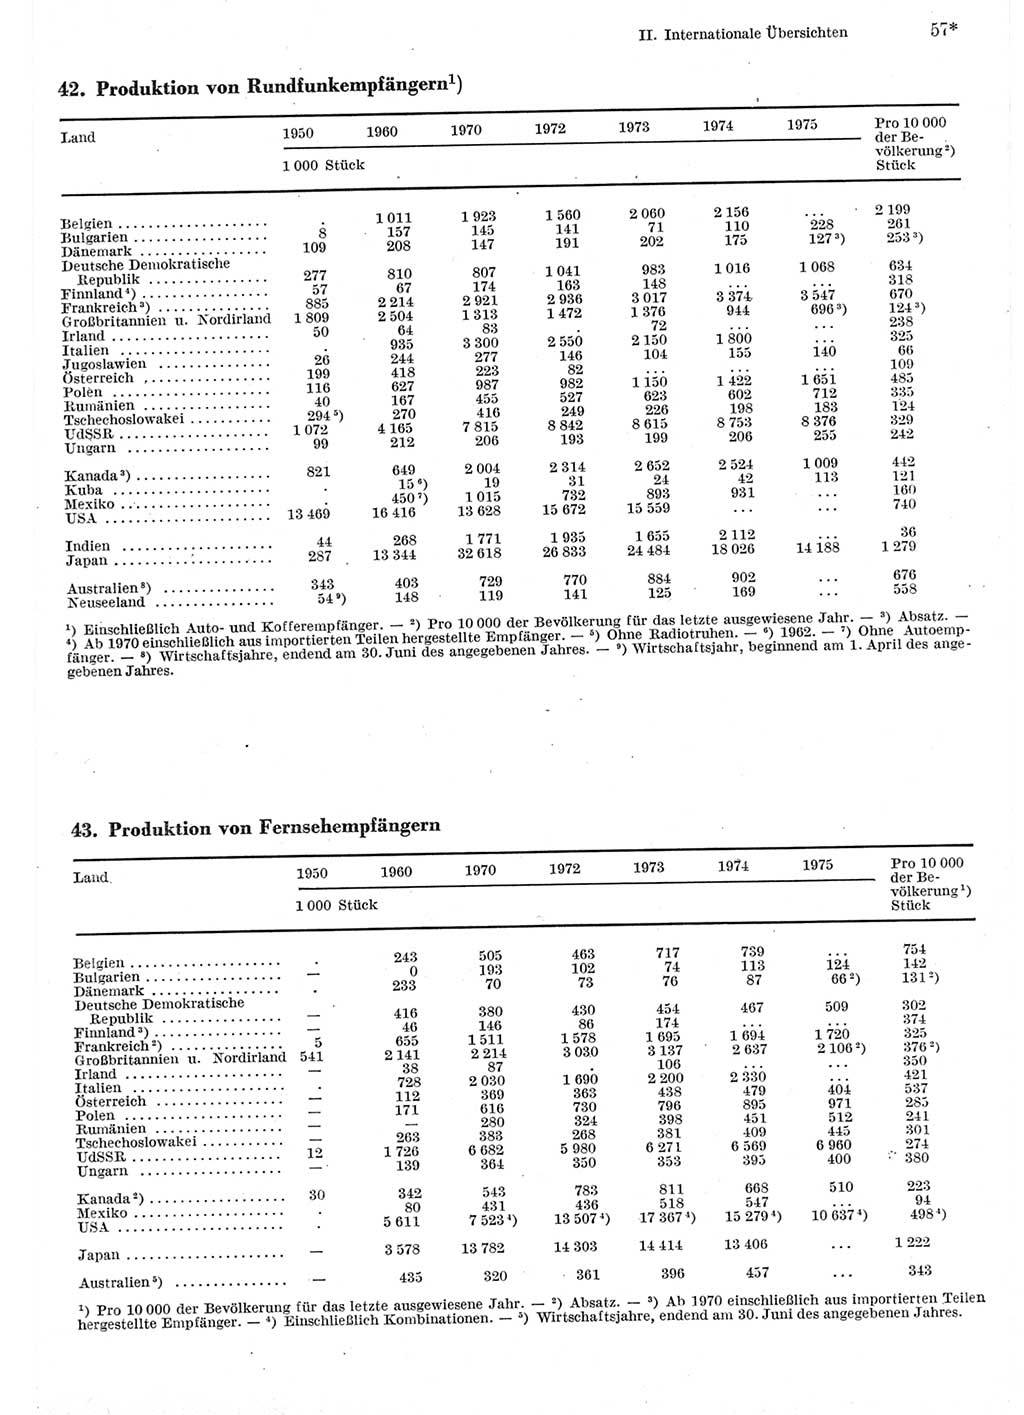 Statistisches Jahrbuch der Deutschen Demokratischen Republik (DDR) 1977, Seite 57 (Stat. Jb. DDR 1977, S. 57)